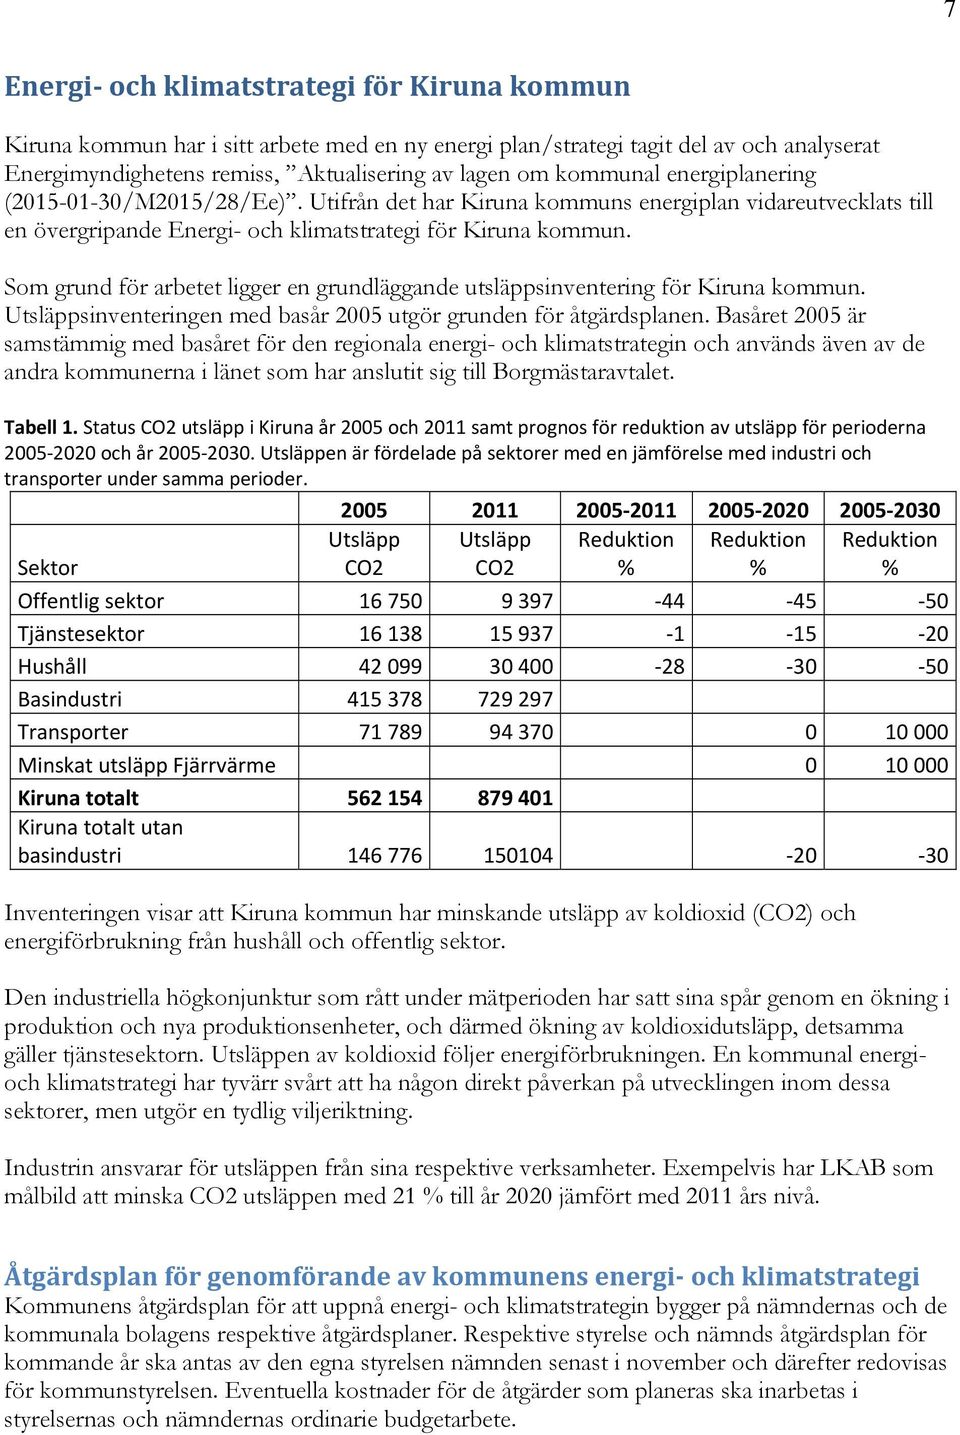 Som grund för arbetet ligger en grundläggande utsläppsinventering för Kiruna kommun. Utsläppsinventeringen med basår 2005 utgör grunden för åtgärdsplanen.